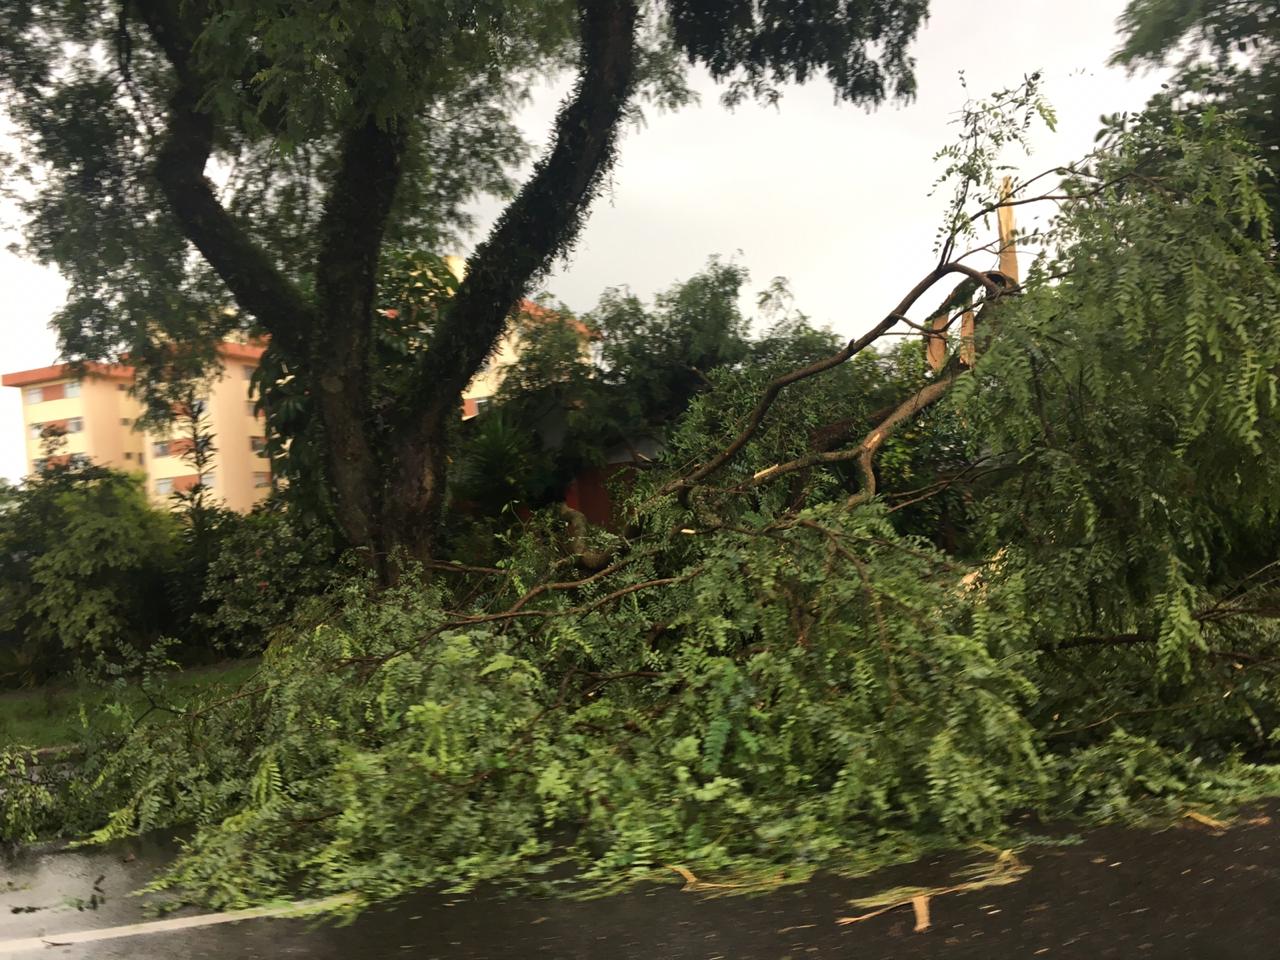  Com ventos de quase 60km/h, temporal causa estragos em Curitiba nesta quarta-feira